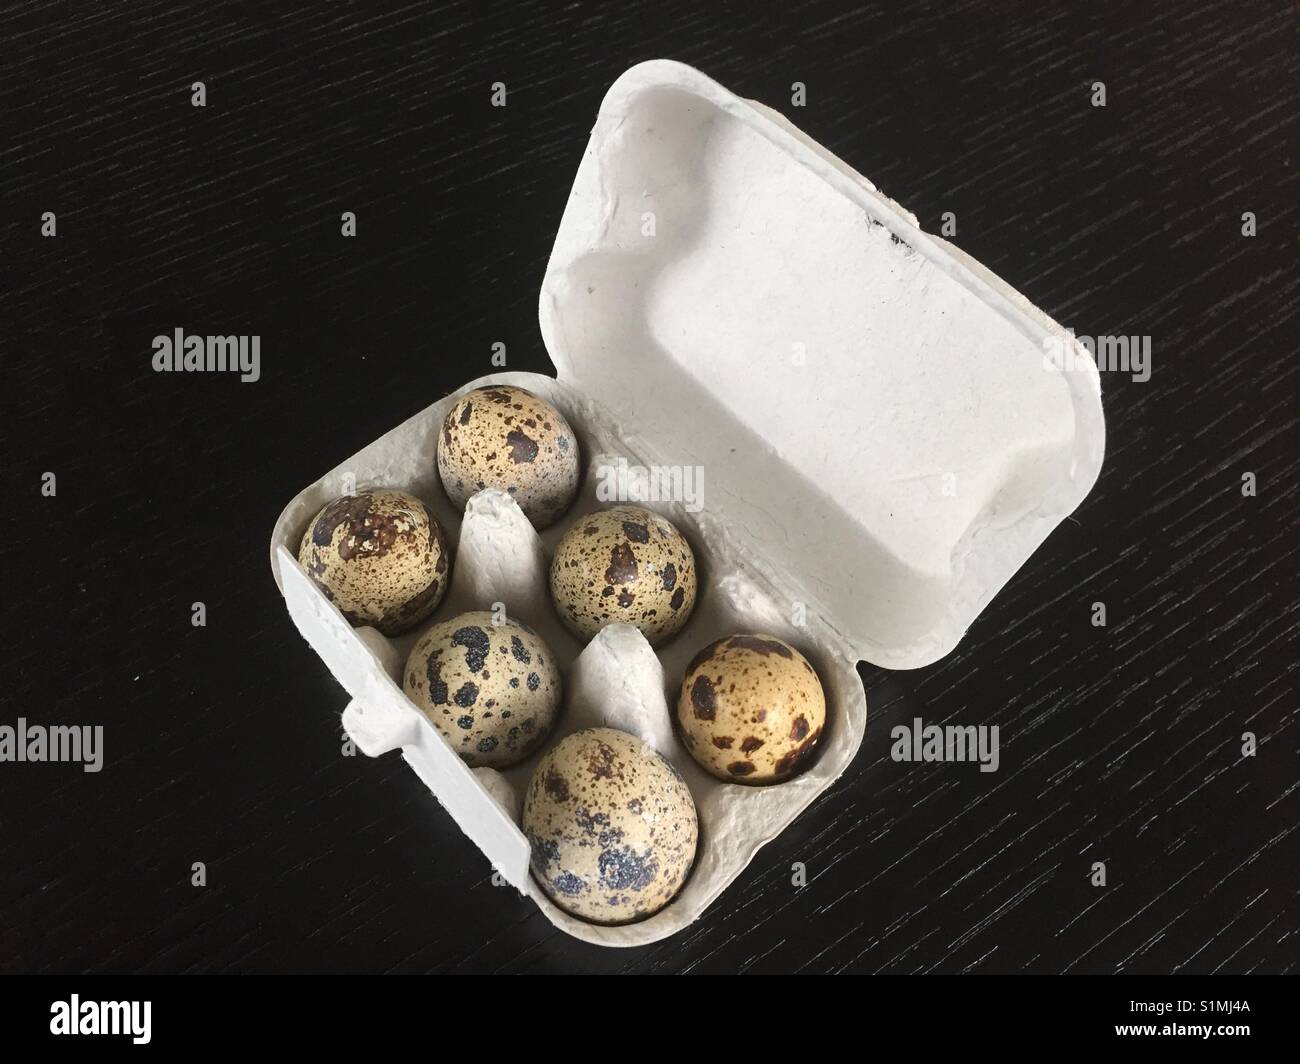 Six quail's eggs in a box Stock Photo